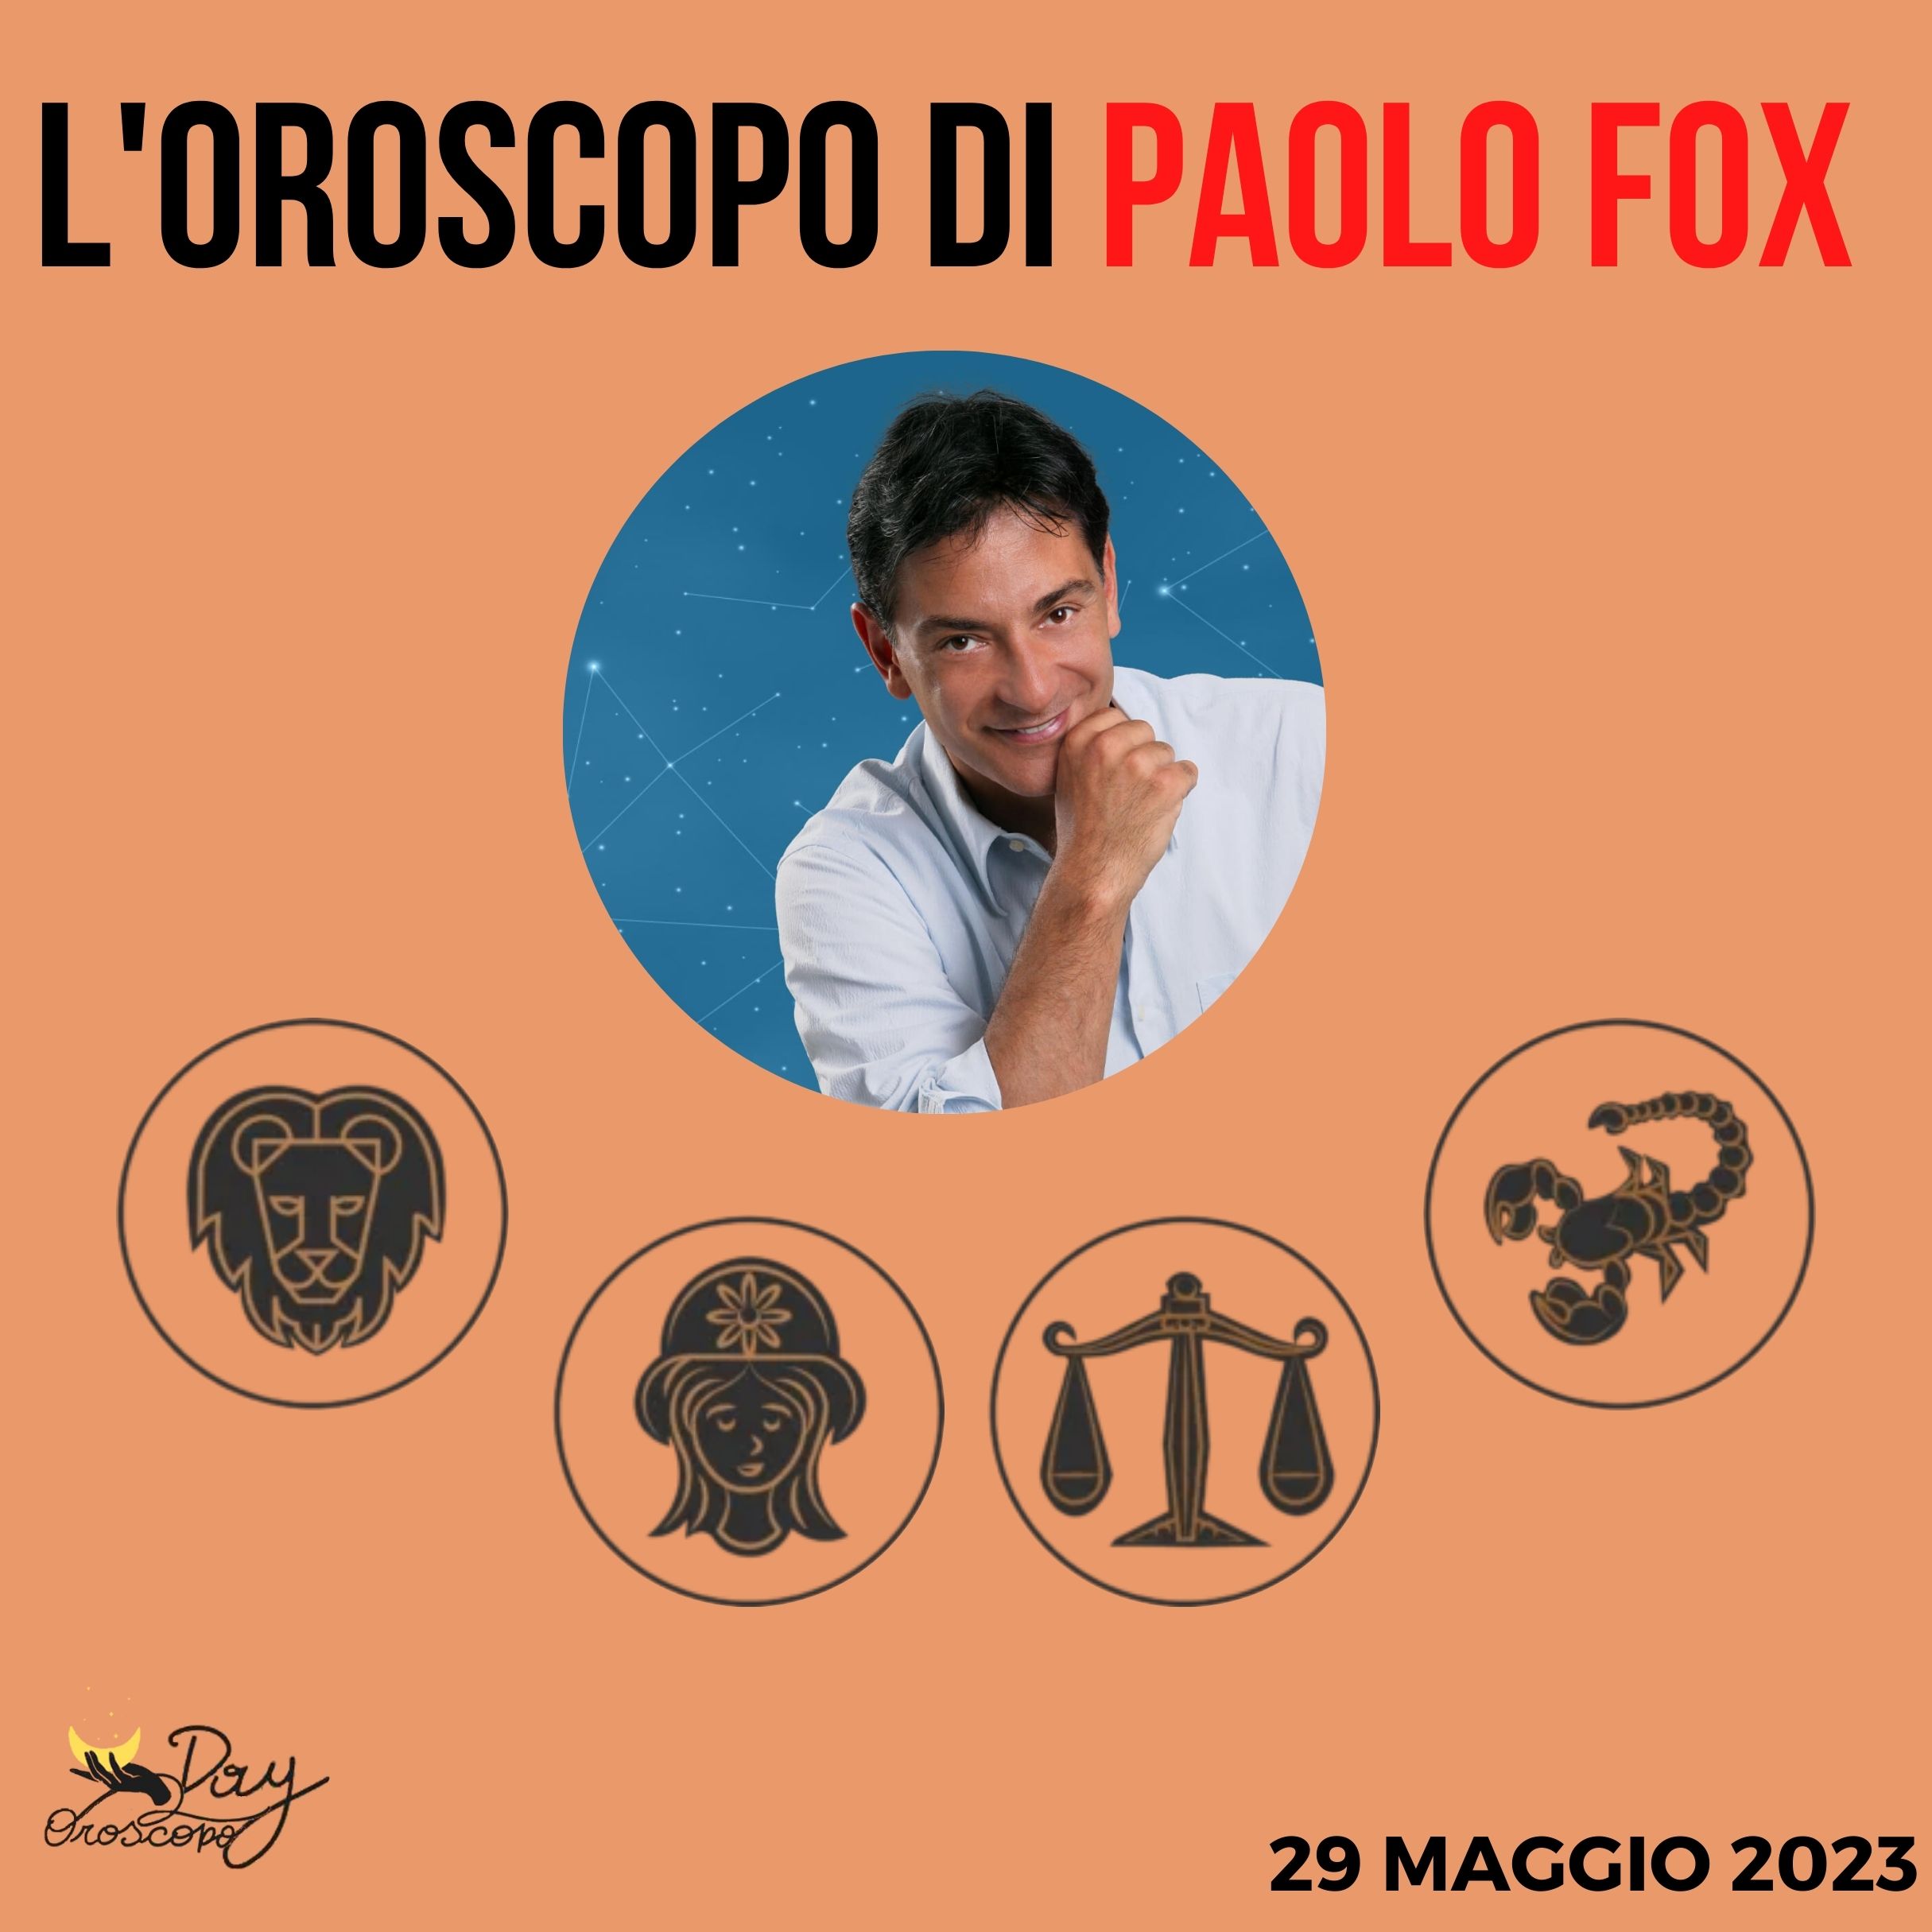 Oroscopo oggi domani Fox 29 maggio Leone Vergine Bilancia Scorpione